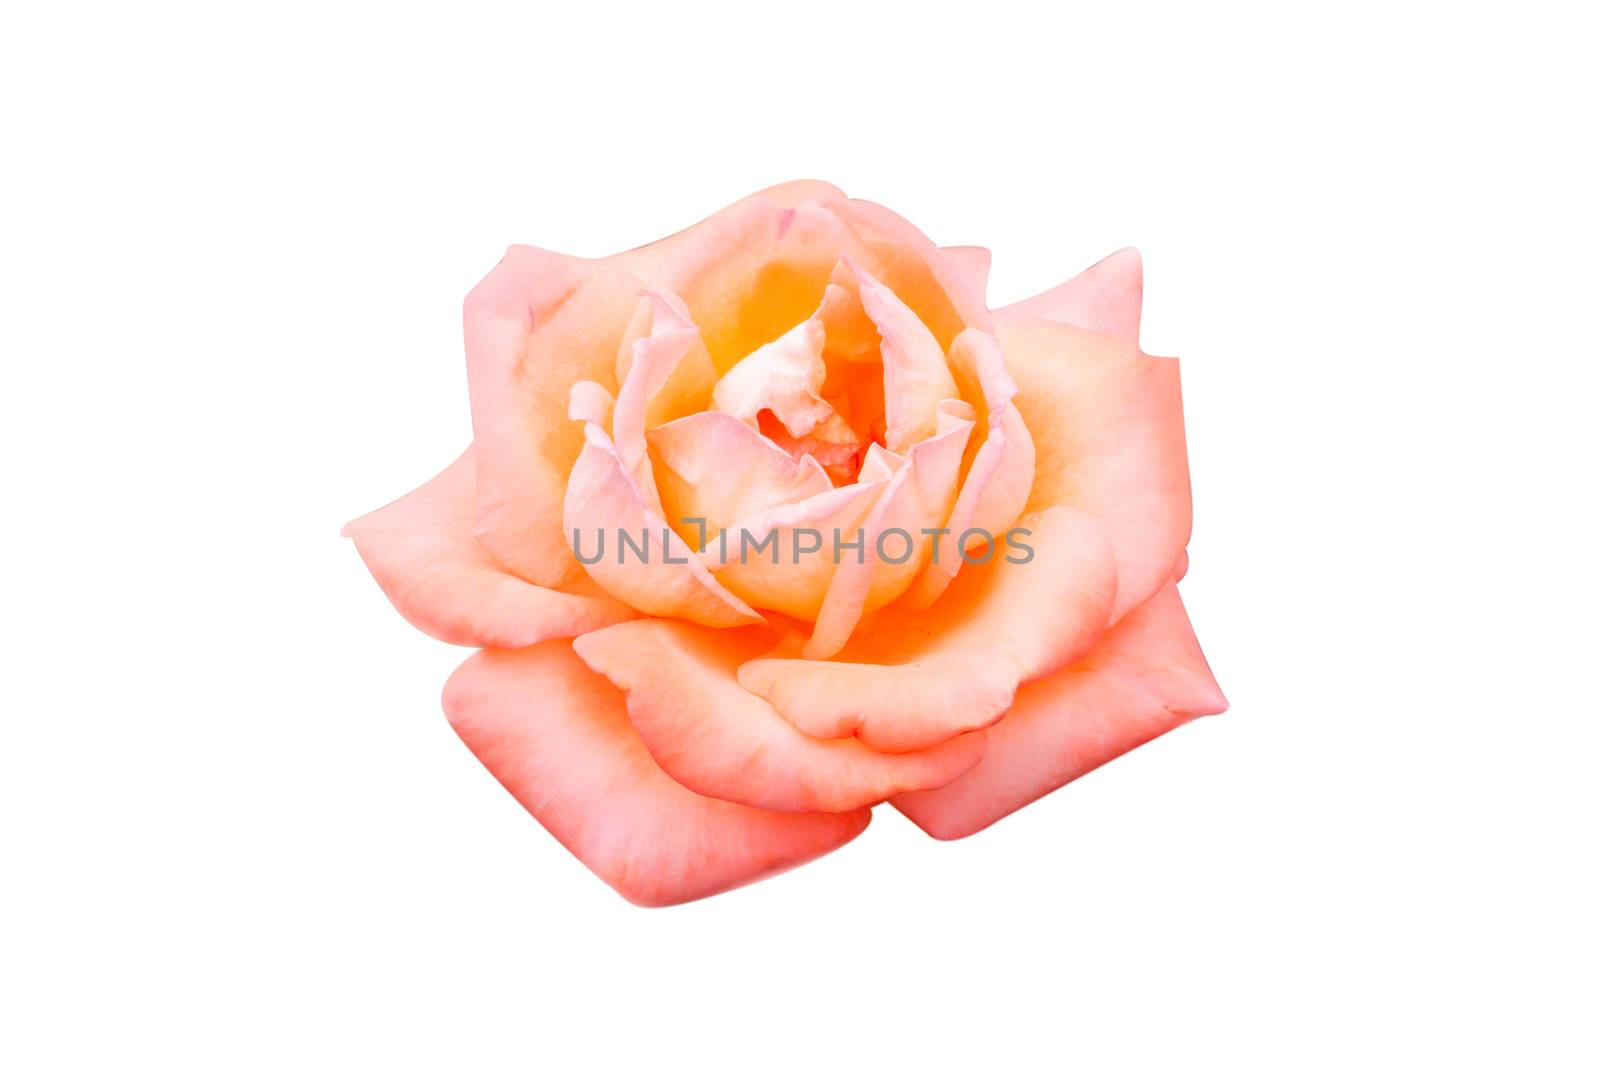 Beautiful sweet orange rose bud flower isolated on white backgro by pt.pongsak@gmail.com